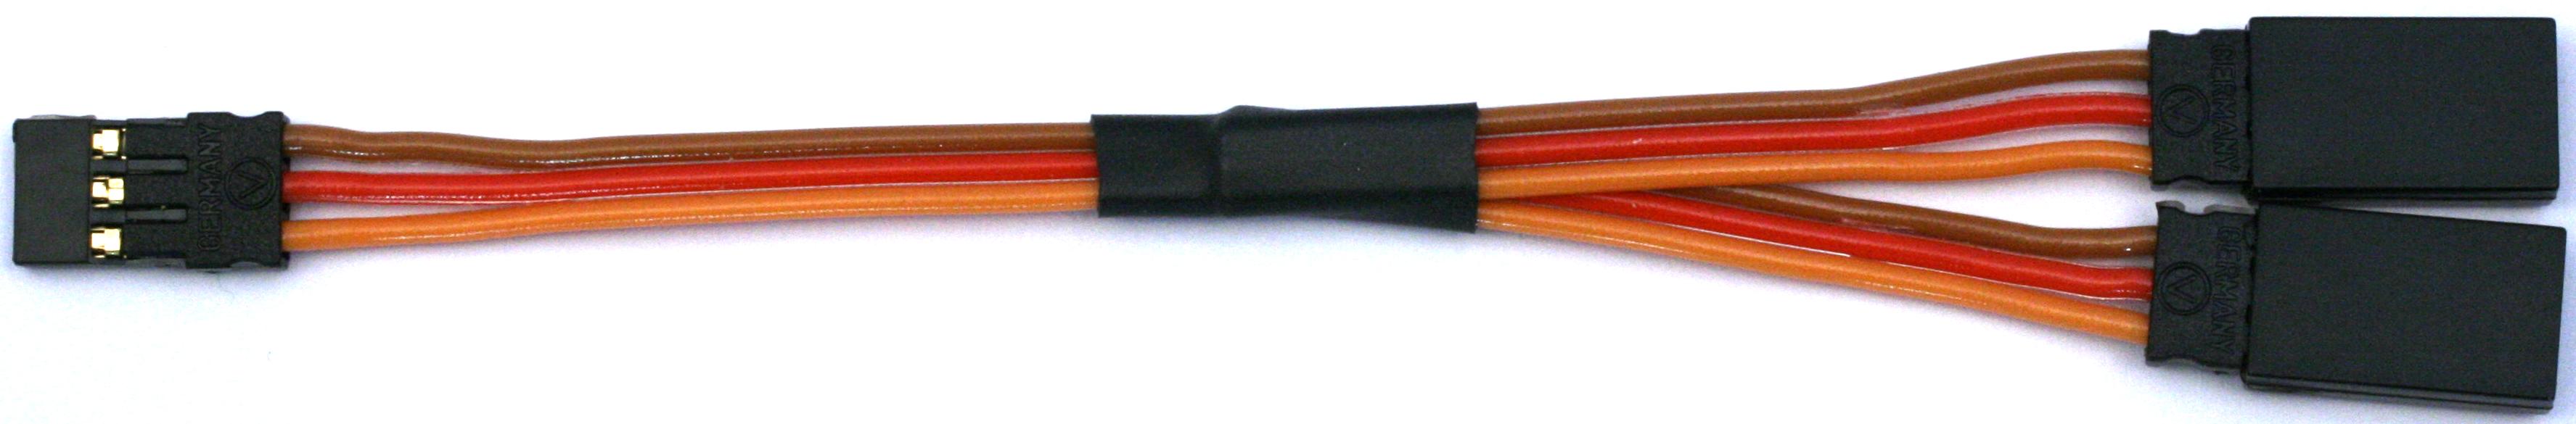 Servokabel (JR-, Unikabel), einzeln verpackt|Y-Kabel Standard, verpackt1